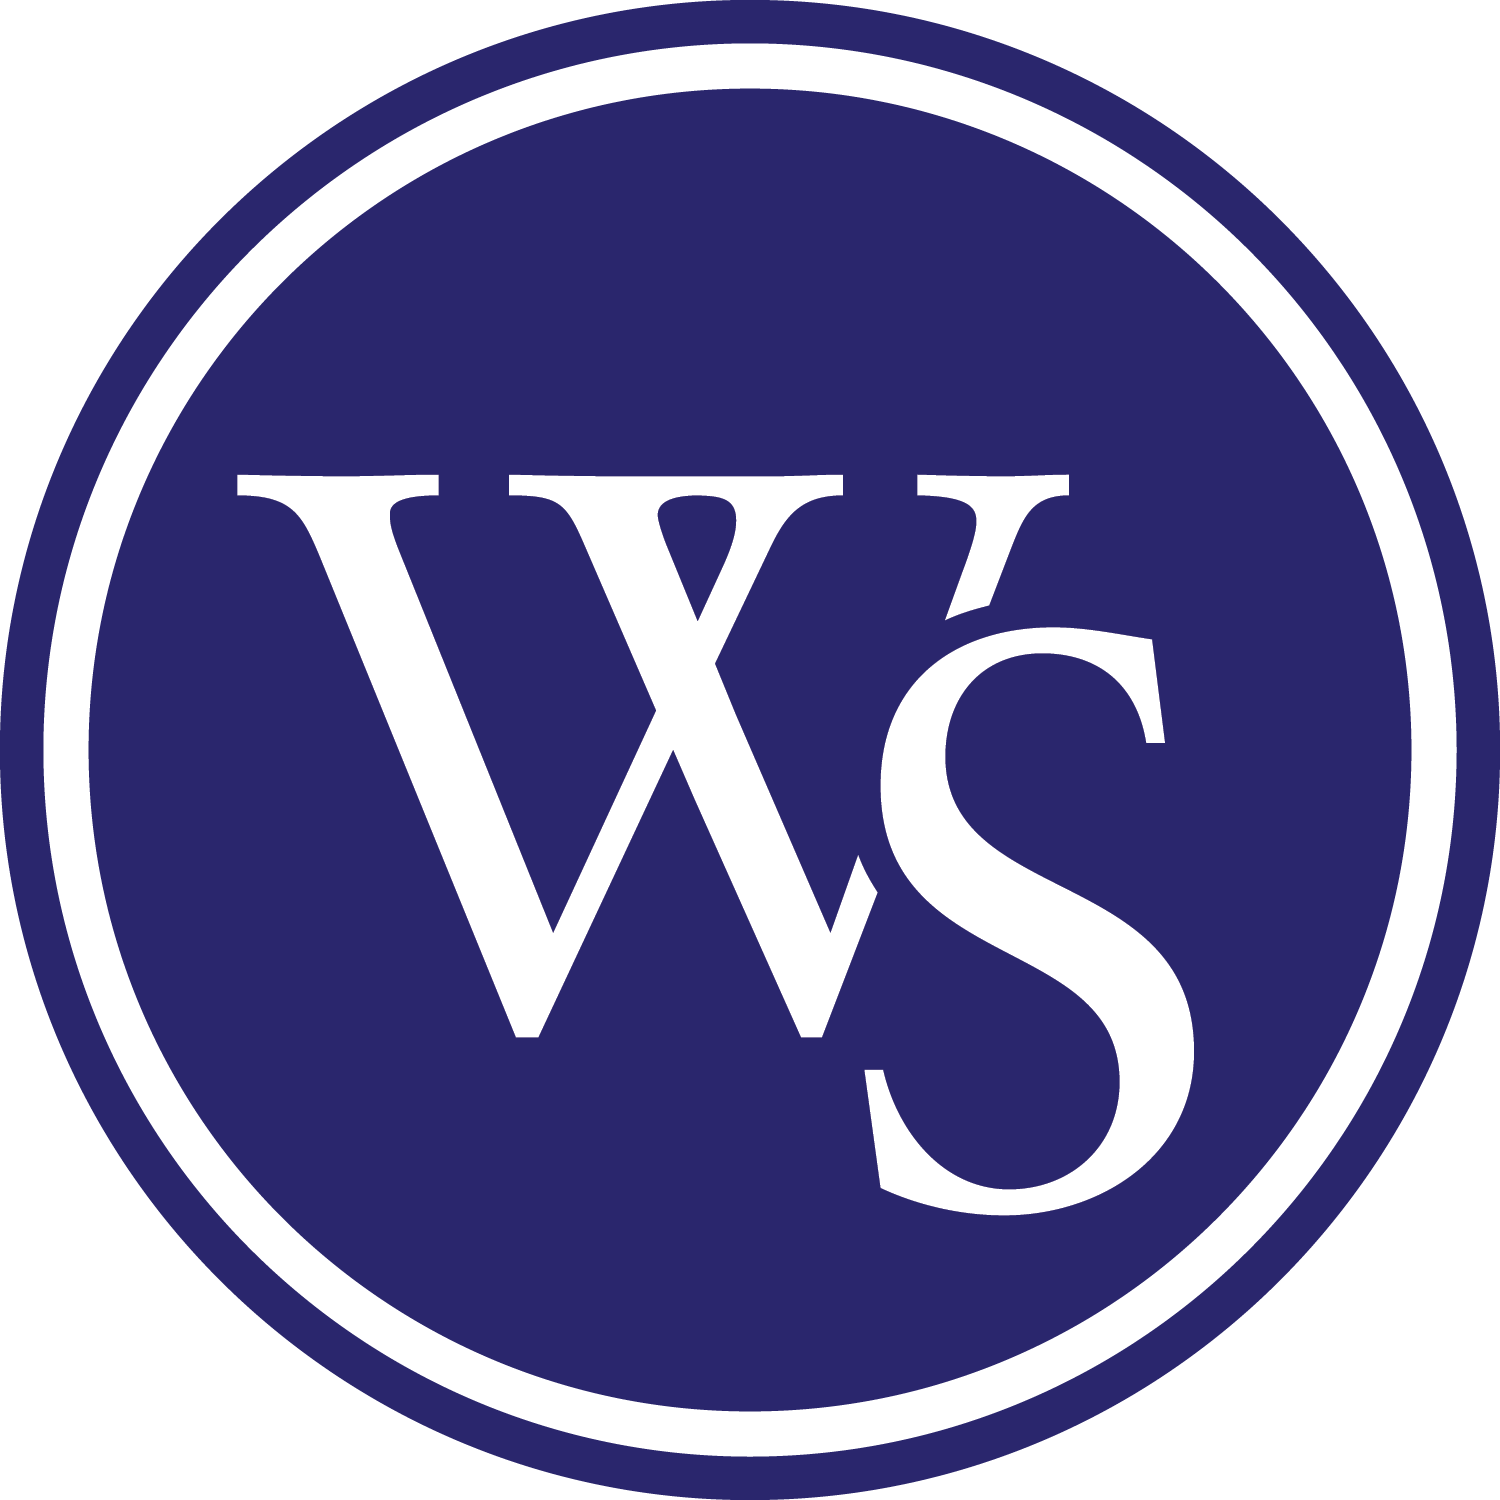 University of Western States (UWS) Logo Image